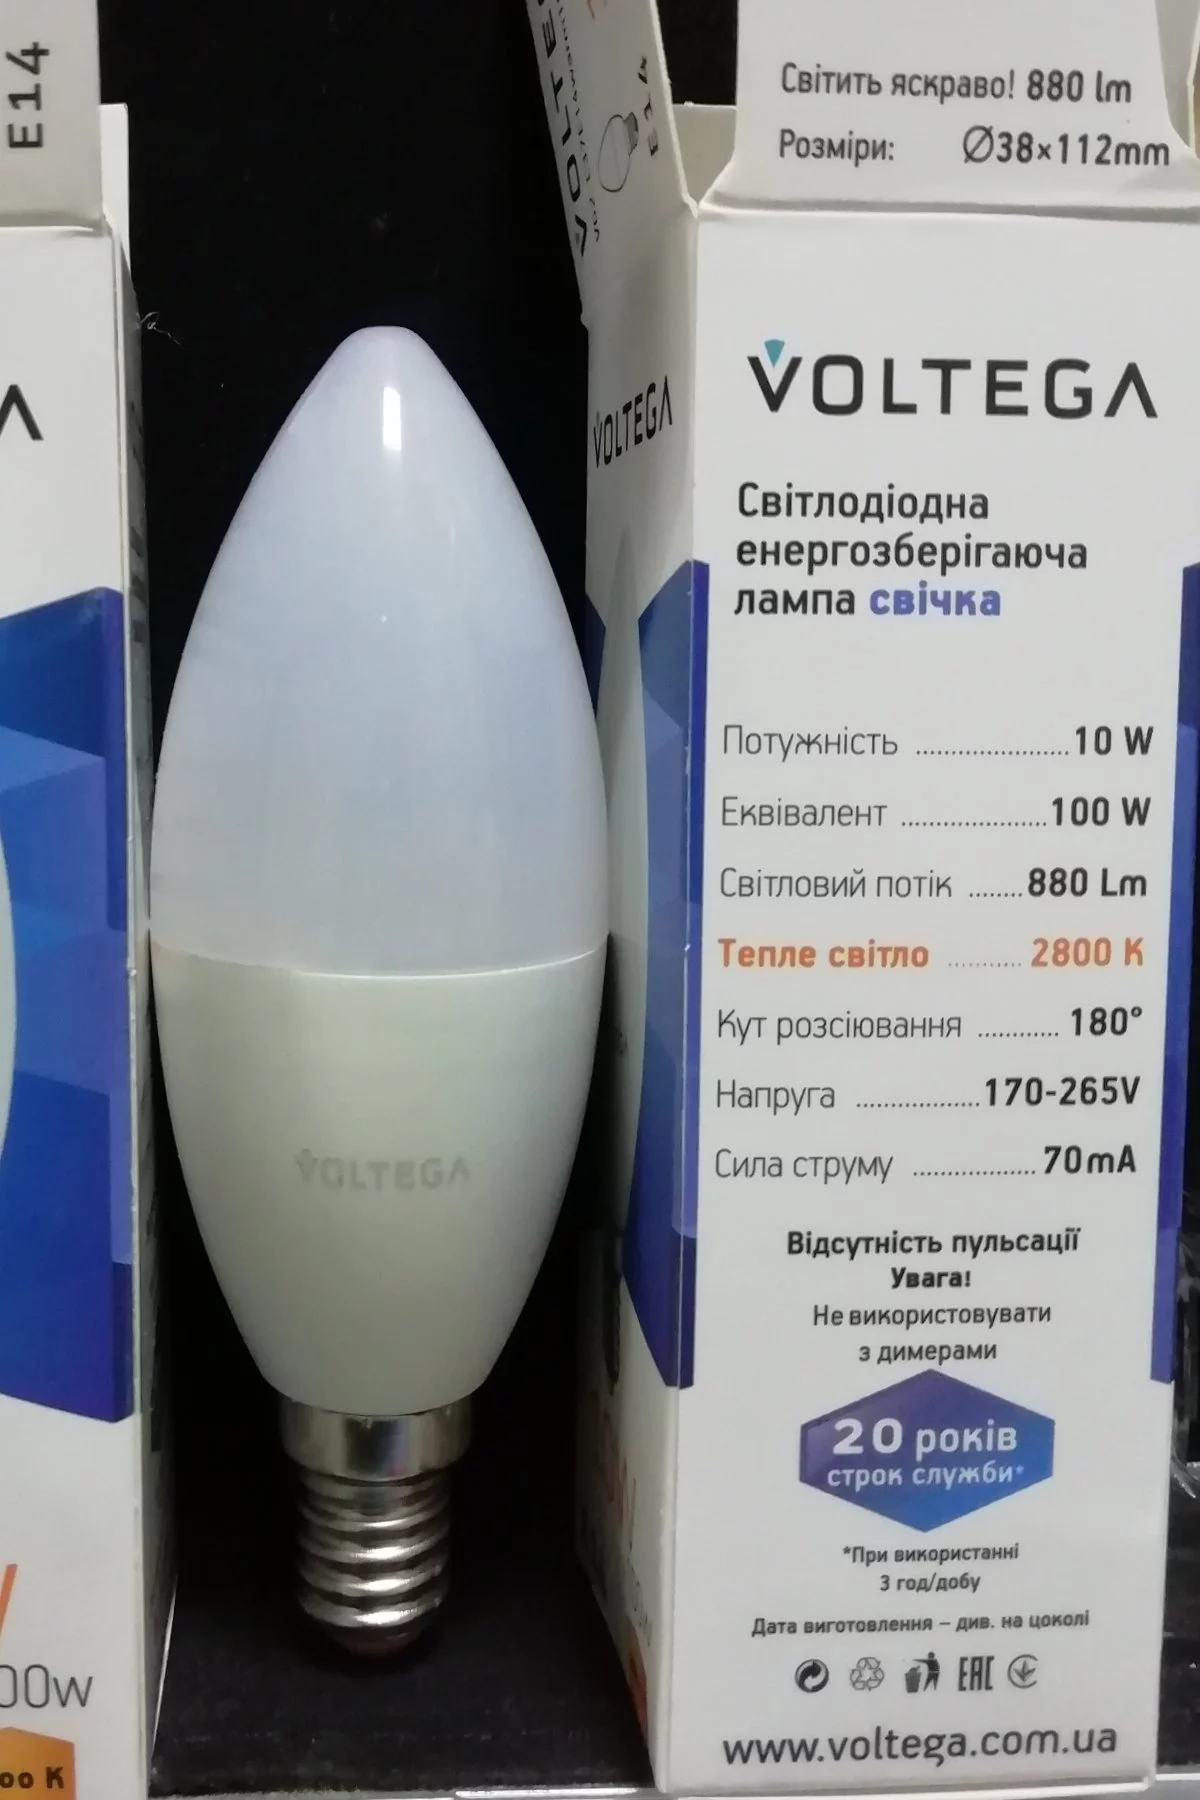   
                        
                        Лампа VOLTEGA  17068    
                        .  
                                                                                                Материал: Пластик.                          фото 2